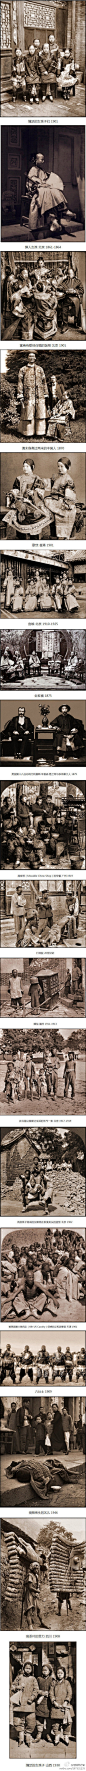 电照风行者历史影像-----让人震撼的100年前中国的好照片